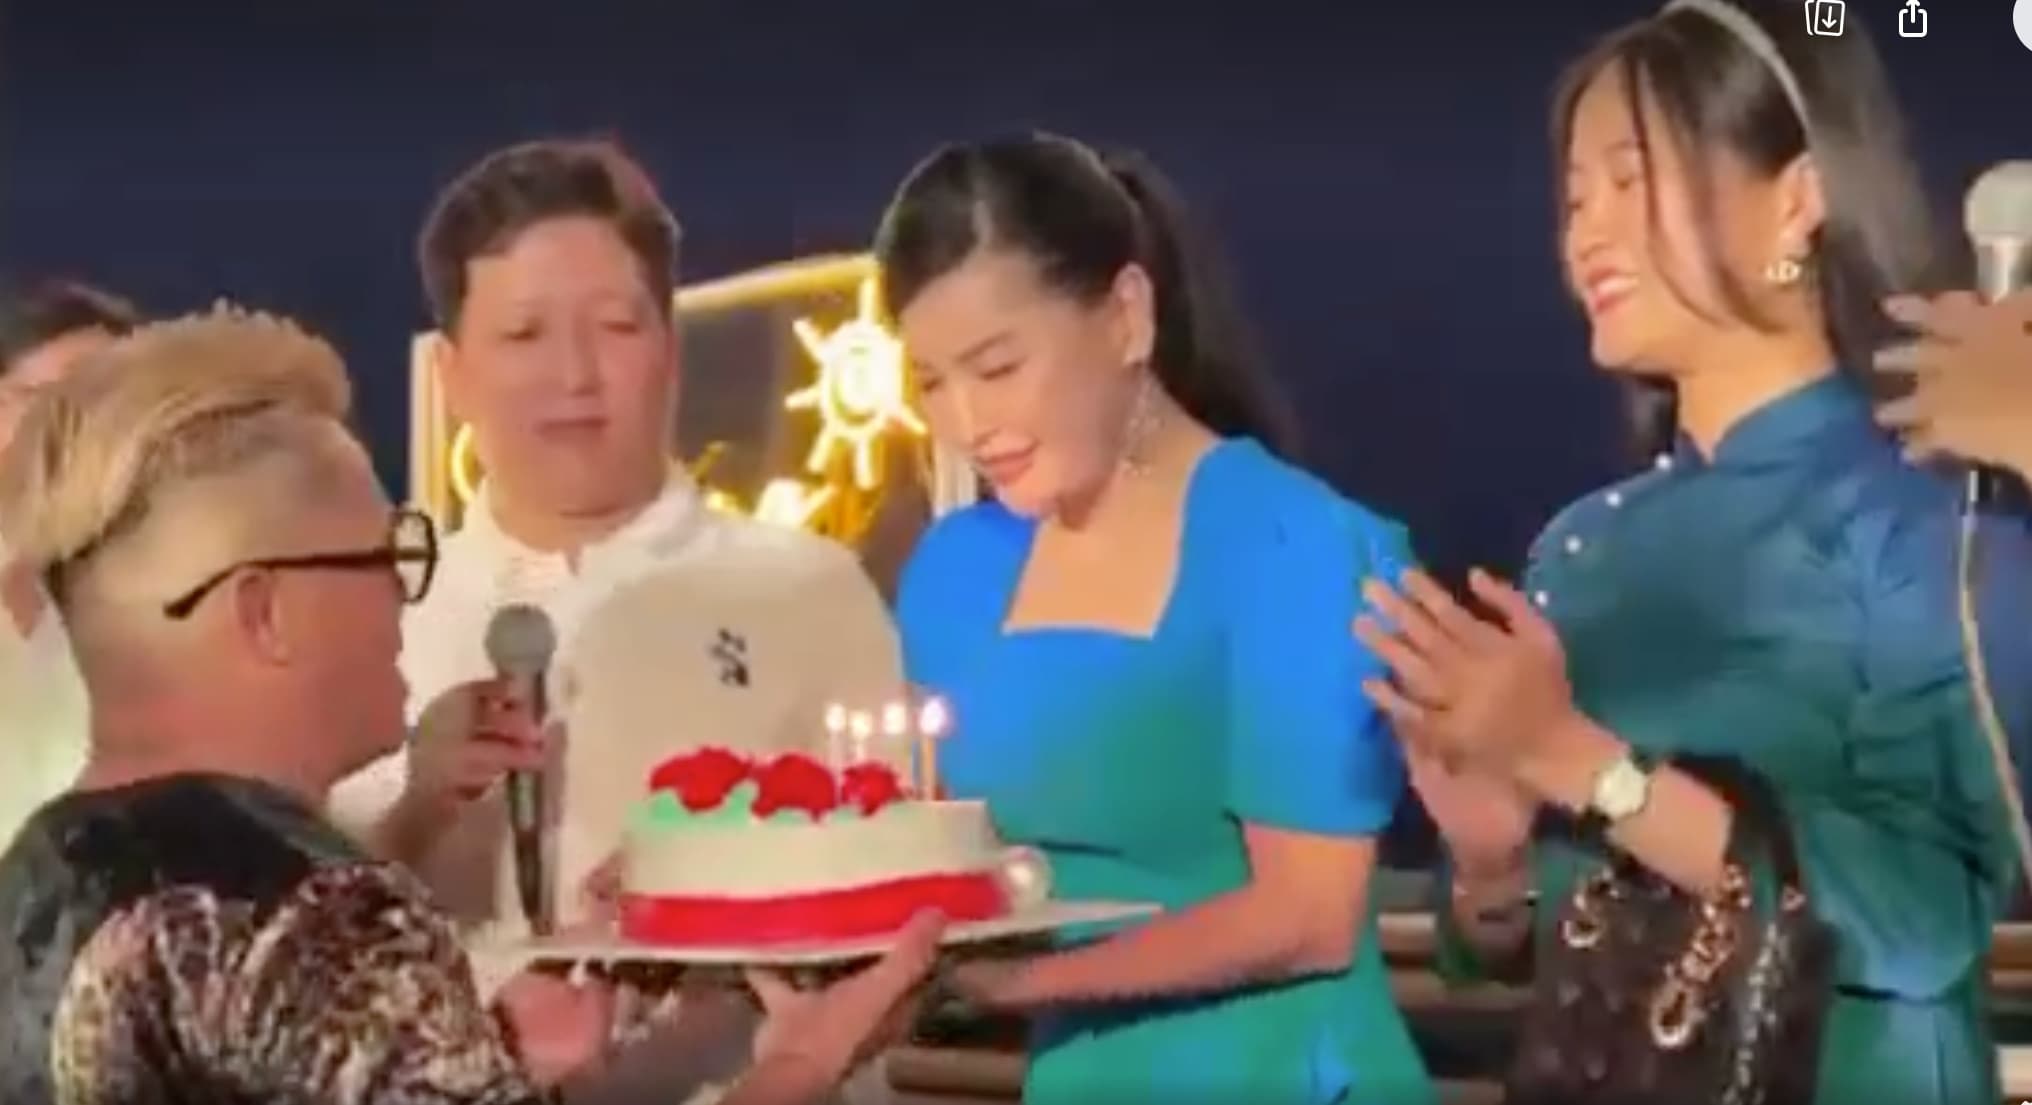 Hoàng Hậu Cát Tường Vui tiệc sinh nhật nhận quà cực chất